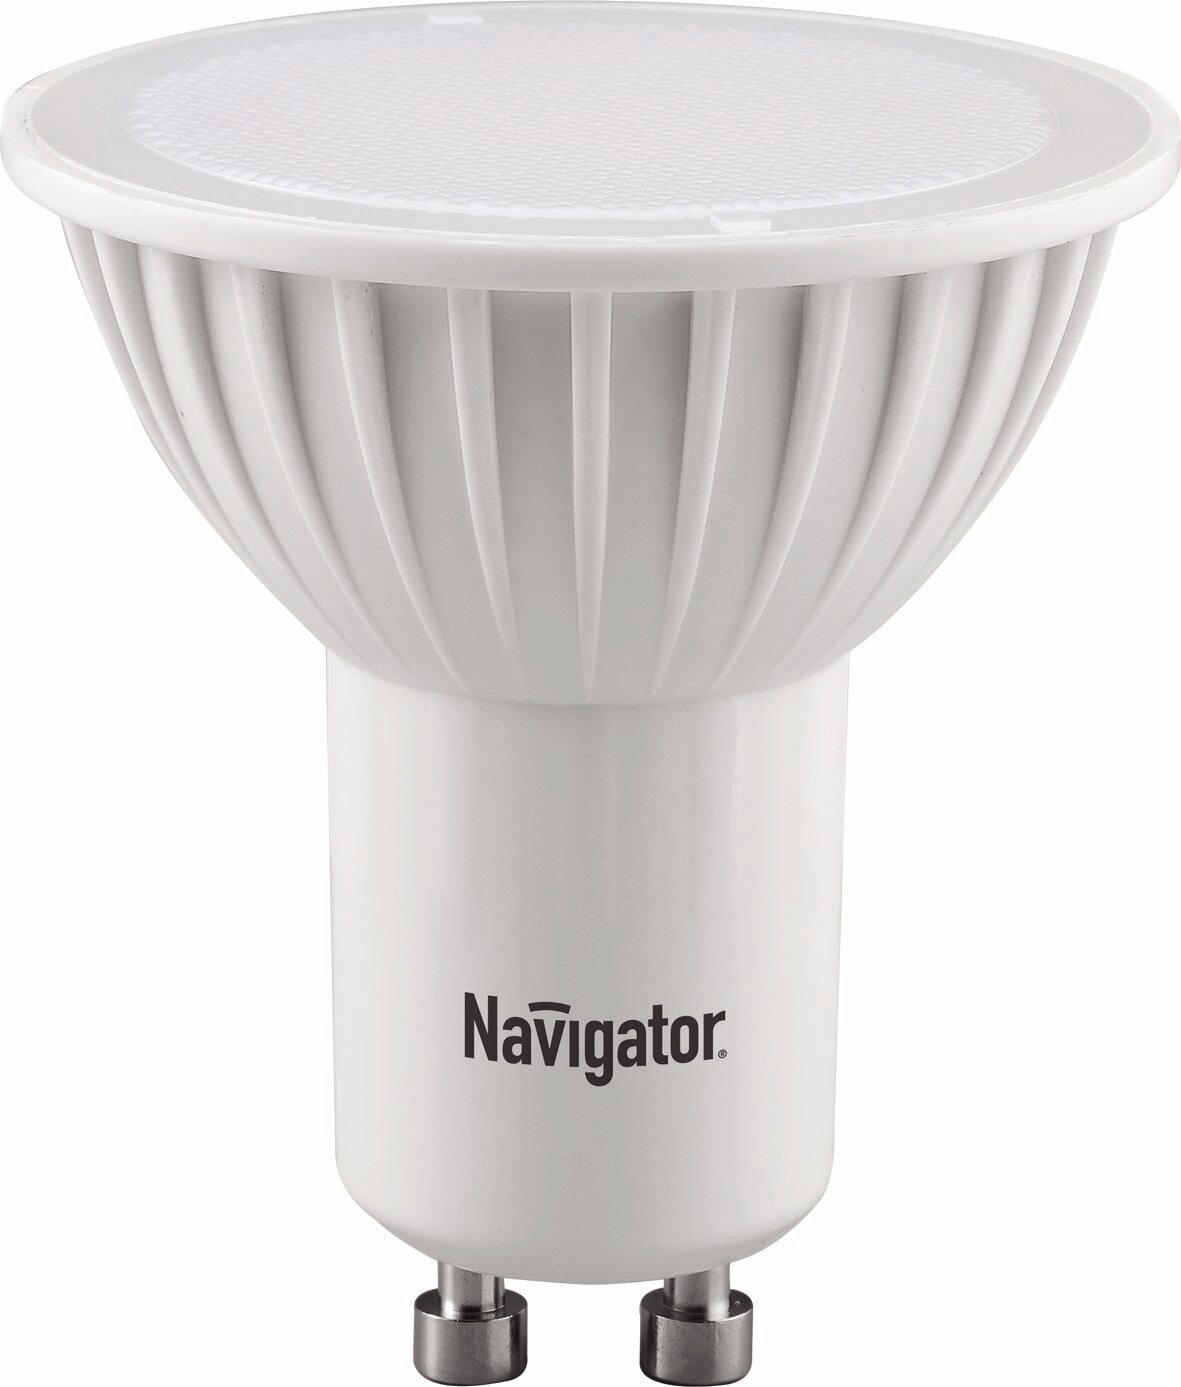 Лампа светодиодная Navigator 94264, GU10, PAR16, 5 Вт, 3000 К